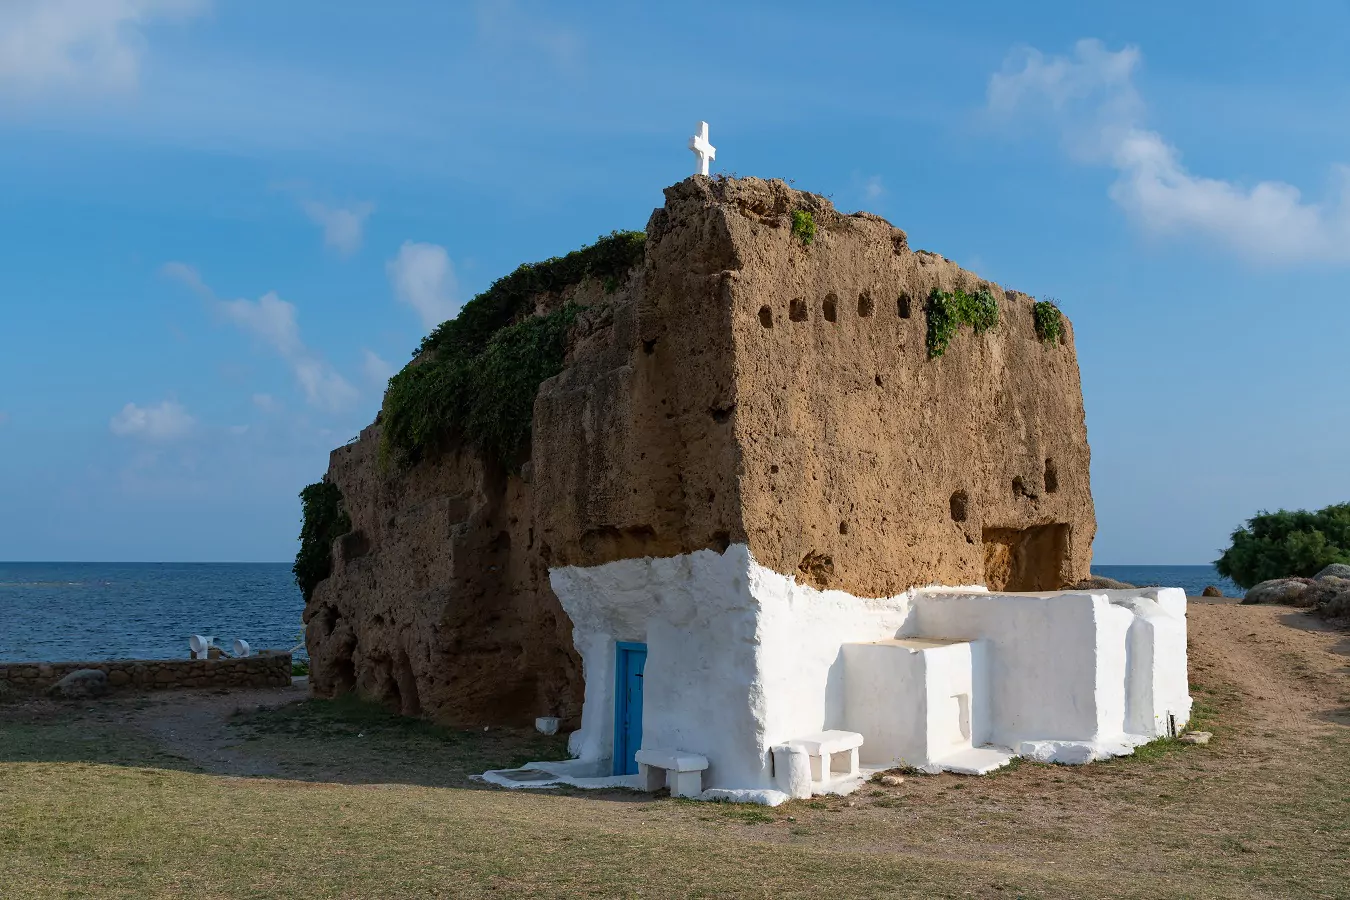 Ο υπόσκαφος ελληνικός ναός που έχει σκαλιστεί κυριολεκτικά πάνω στο βράχο